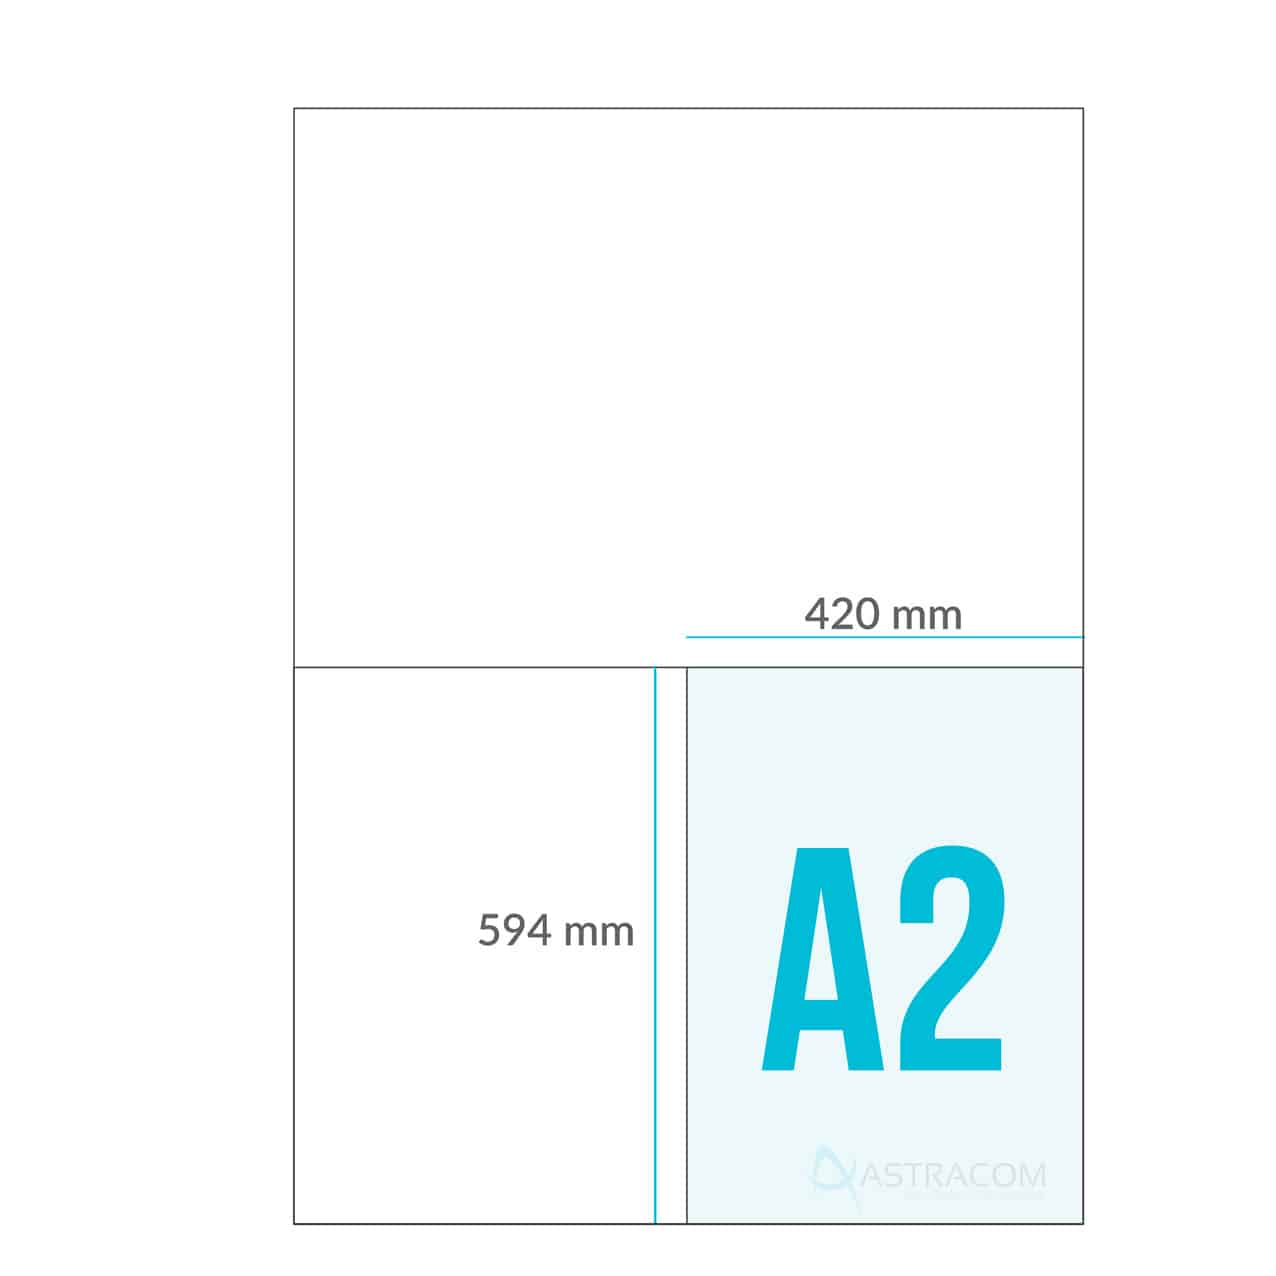 Formato carta e dimensione dei fogli - Astracom